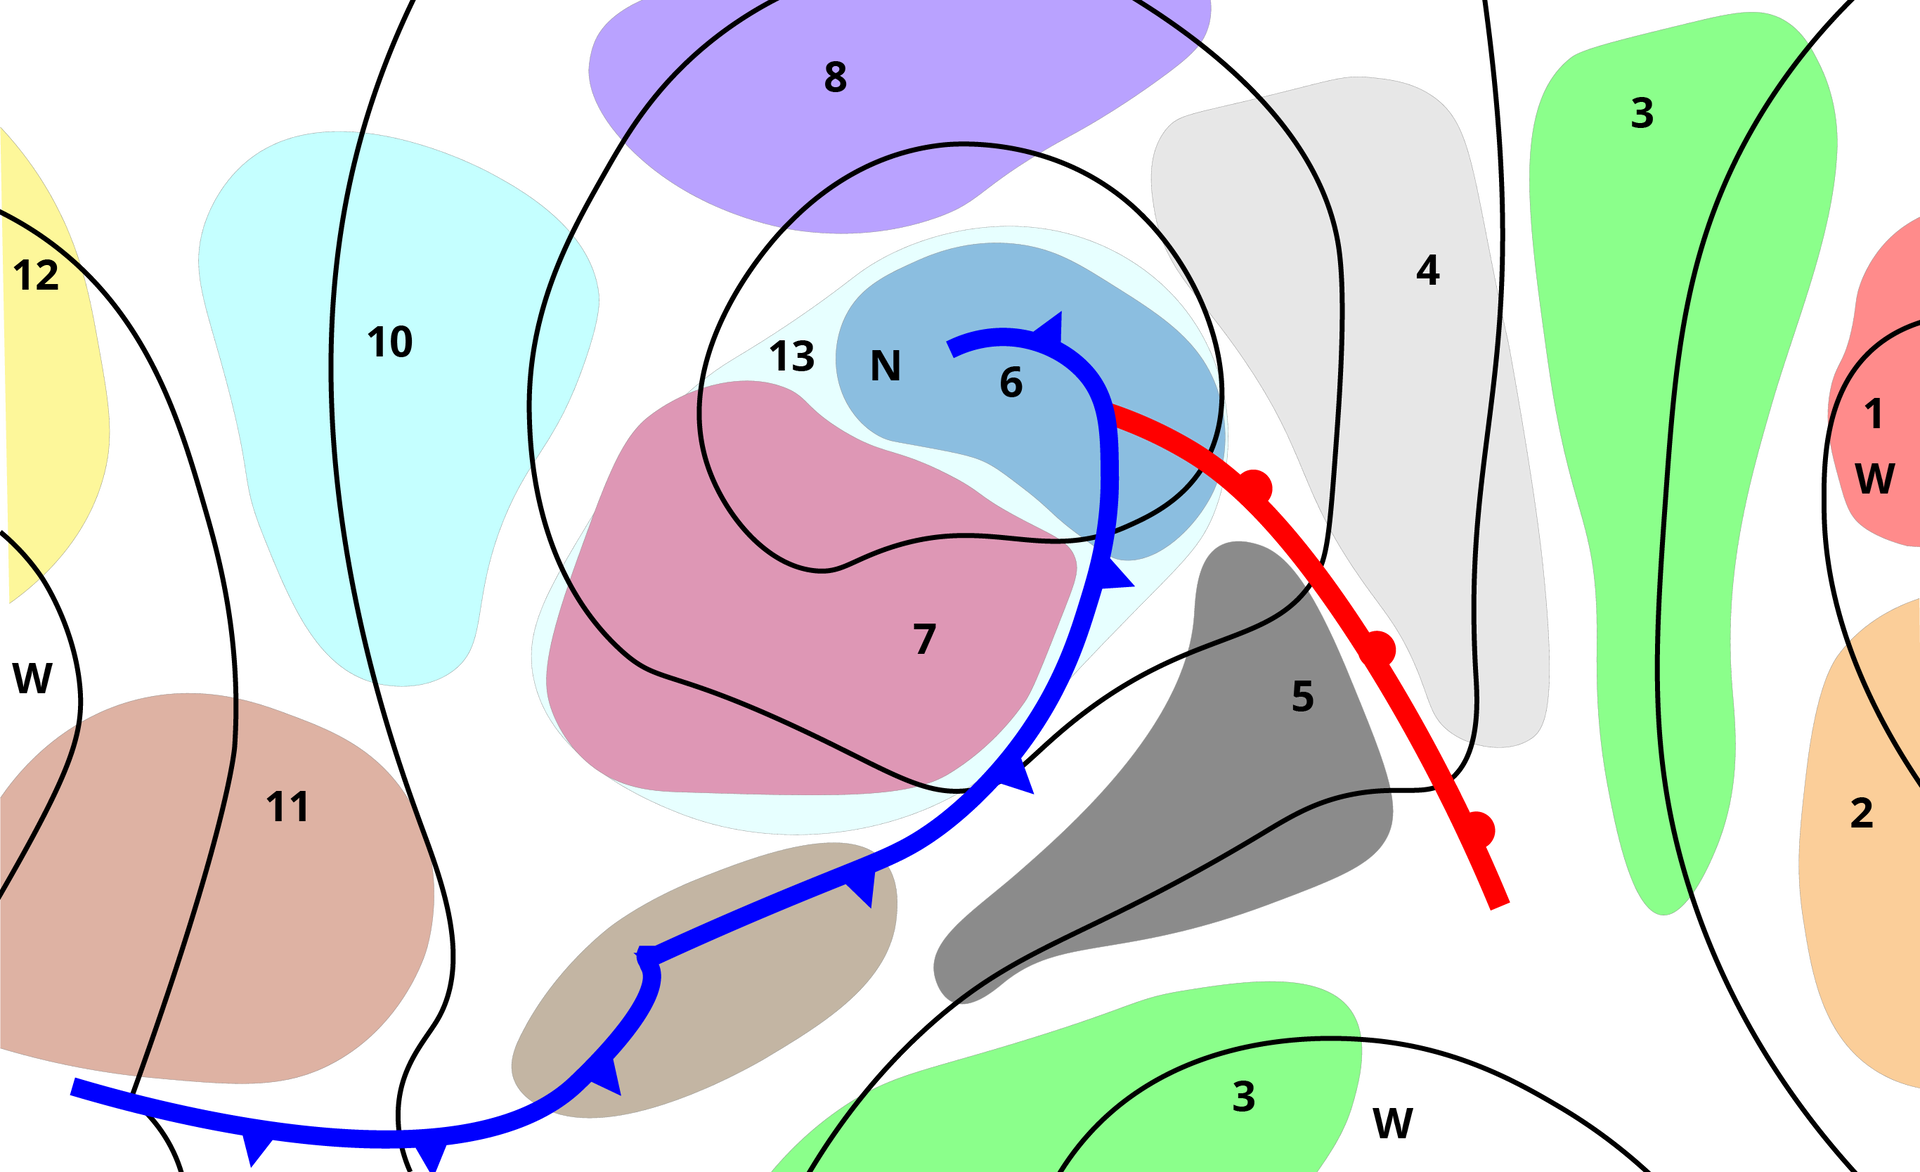 Ilustracja przedstawia schemat niżu i wyżu oraz występowania obszarów wywołujących różne objawy chorobowe. Niż oznaczono literą N, wyż literą W. Widoczne są izobary - linie łączące punkty o takim samym ciśnieniu atmosferycznym,  przypominają okręgi od najmniejszego do największego, i różnych kształtów kolorowe pola oznaczające obszary wywołujące objawy chorobowe.  Na kolorowych polach są różne cyfry, na przykład na polu zielonym jest cyfra 3 - na pograniczu wyżu i niżu, na fioletowym 8 - występuje nieco dalej od centrum niżu, na niebieskim 10 - jest na skraju niżu. Cyfry są od 1 do 12. 